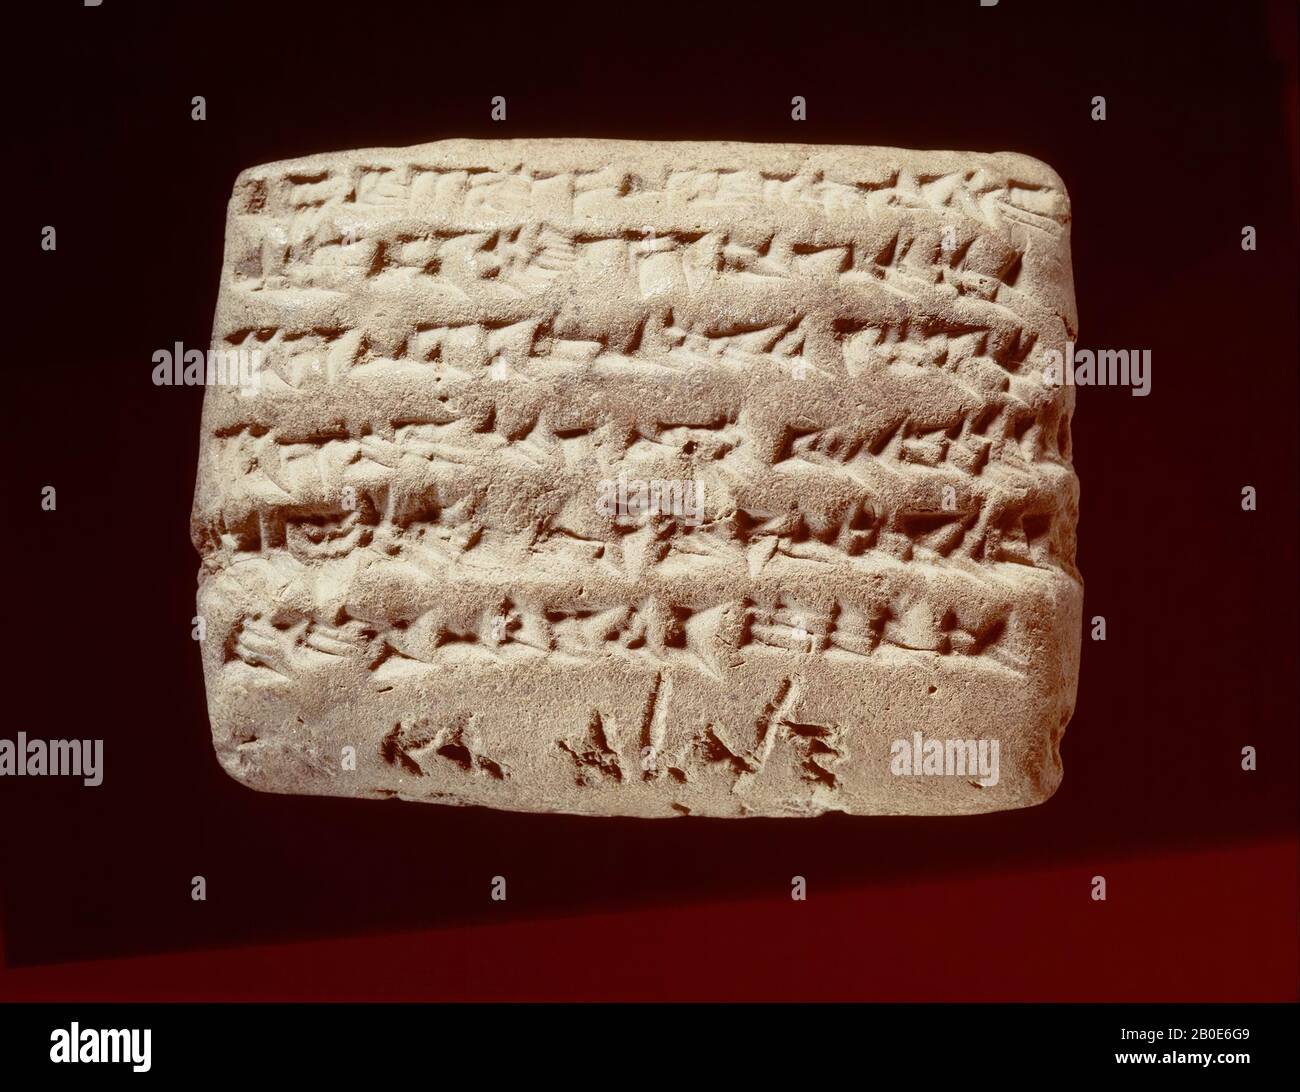 Una tablilla de arcilla con una inscripción cuneiforme y una leyenda aramea. El texto es una carta de Sippar con una reclamación de 15 shekels de plata, acusado a un cierto Bel-iddina hijo de Nabu-etir-napsjati, desde el año 29 del rey Darío rey de Babilonia y rey de los países (492 AC .). En el borde inferior de la tablilla hay un título, en letra aramea cursiva grabada en la arcilla, con las palabras Van bel-iddina hijo de Napahai, es decir, el nombre del deudor. La introducción gradual del arameo como lenguaje de habla y escritura en Mesopotamia, desde el siglo IX antes de Cristo, condujo, especialmente en persa Foto de stock